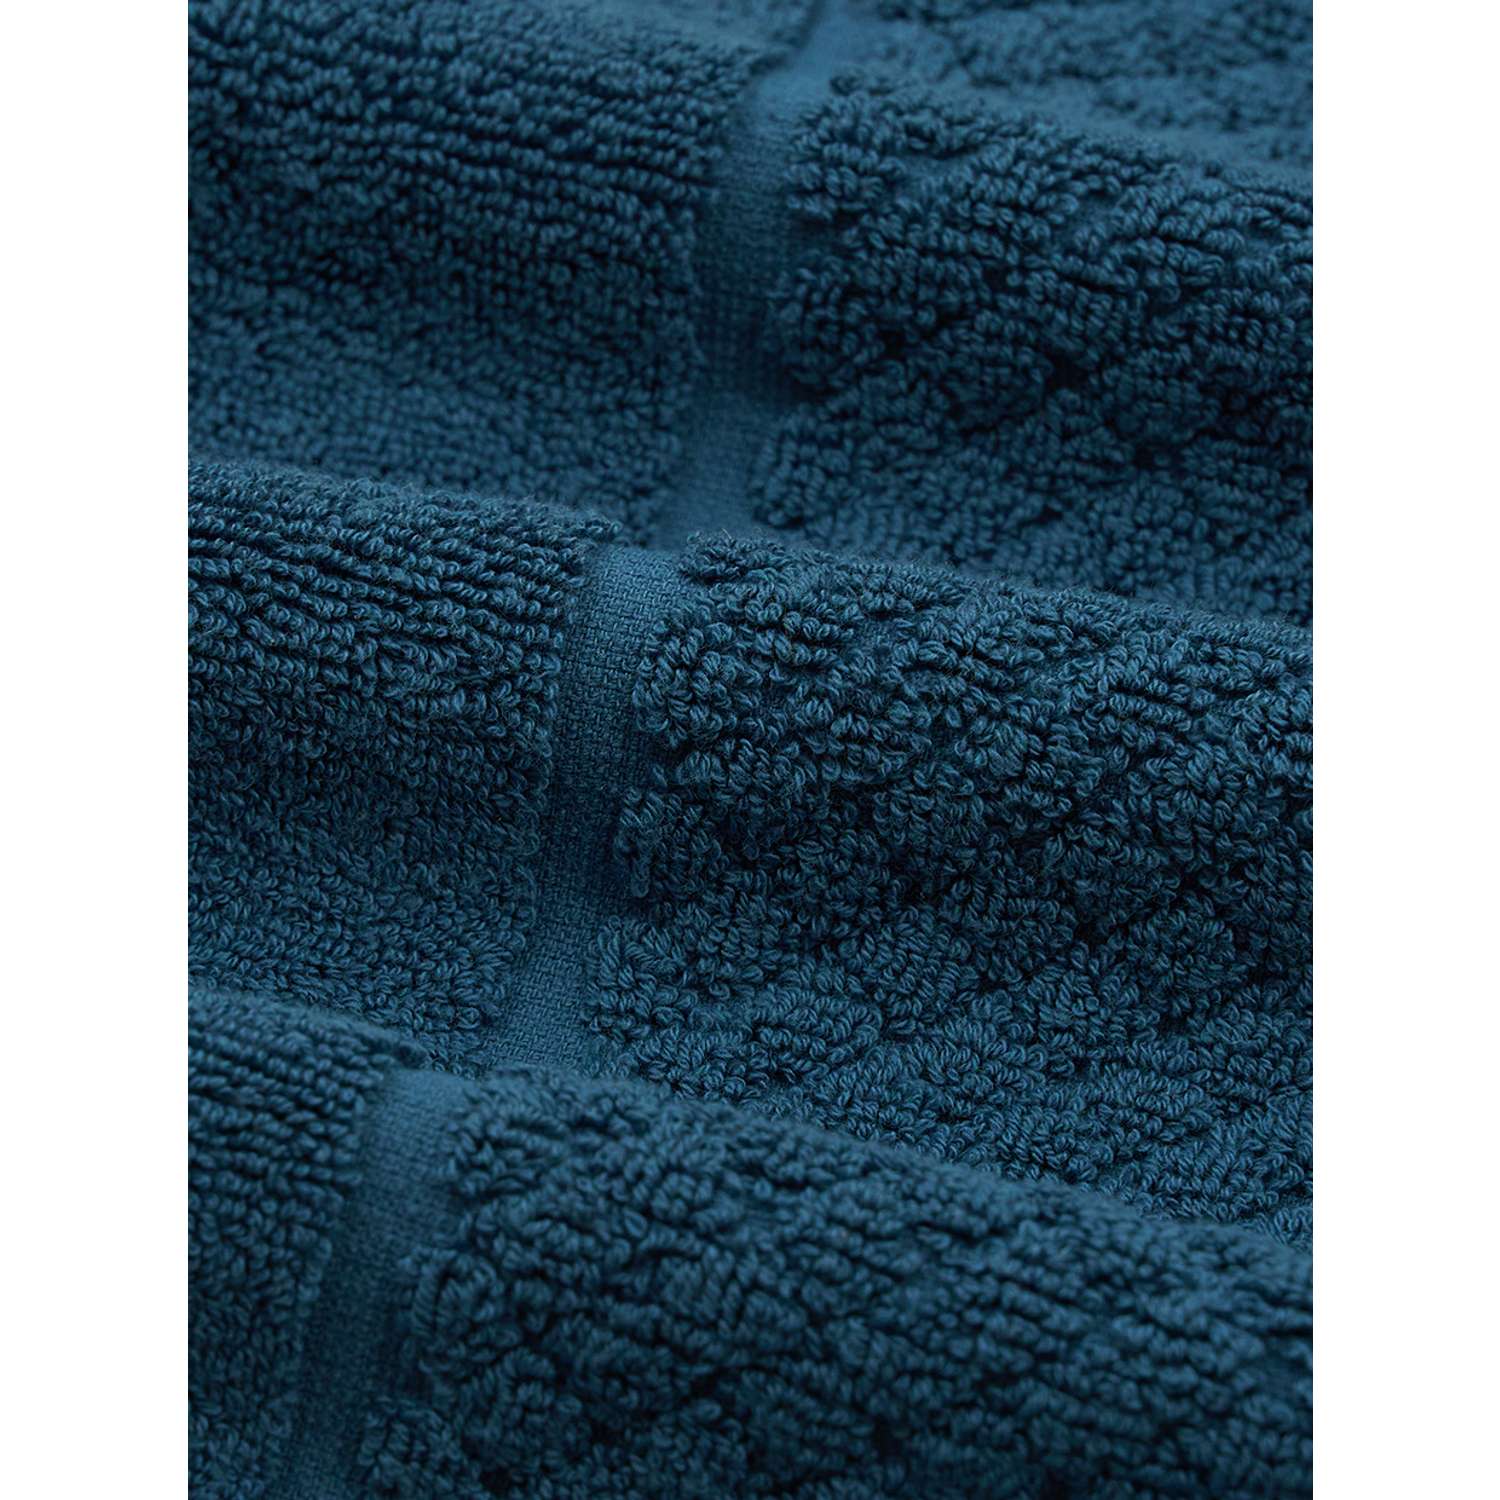 Полотенце для ног Frutto Rosso коврик для ног 50*70 - фото 7